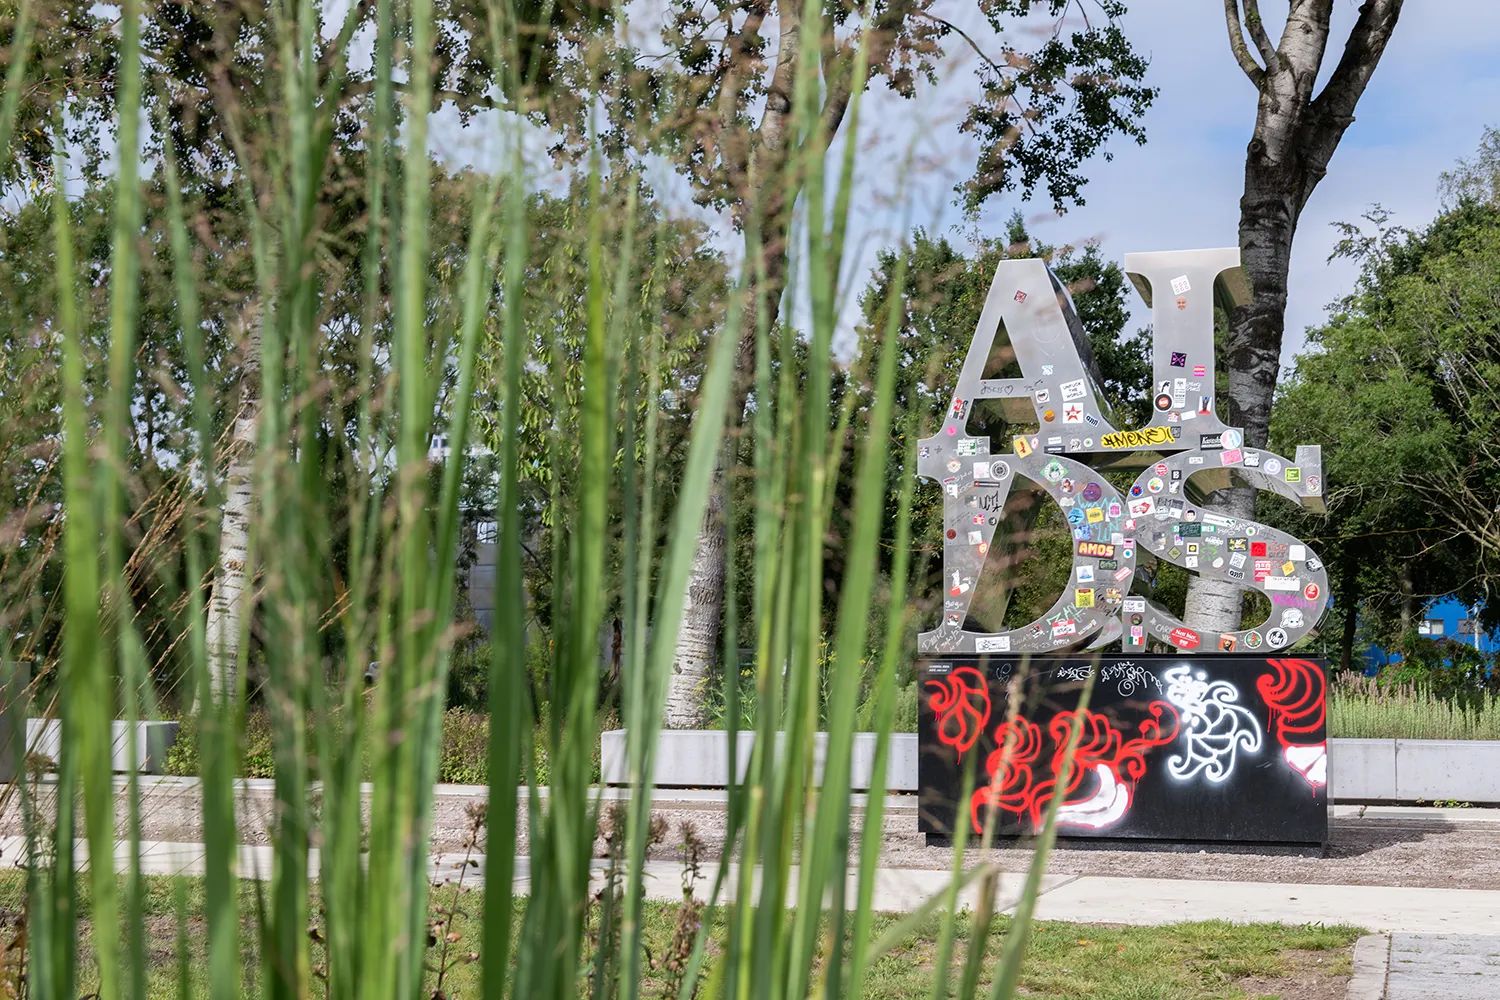 A en I op D en S zilveren metalen letters (leest AIDS) versierd met stickers en andere graffitis geplaatst op een zwarte sokkel in een park